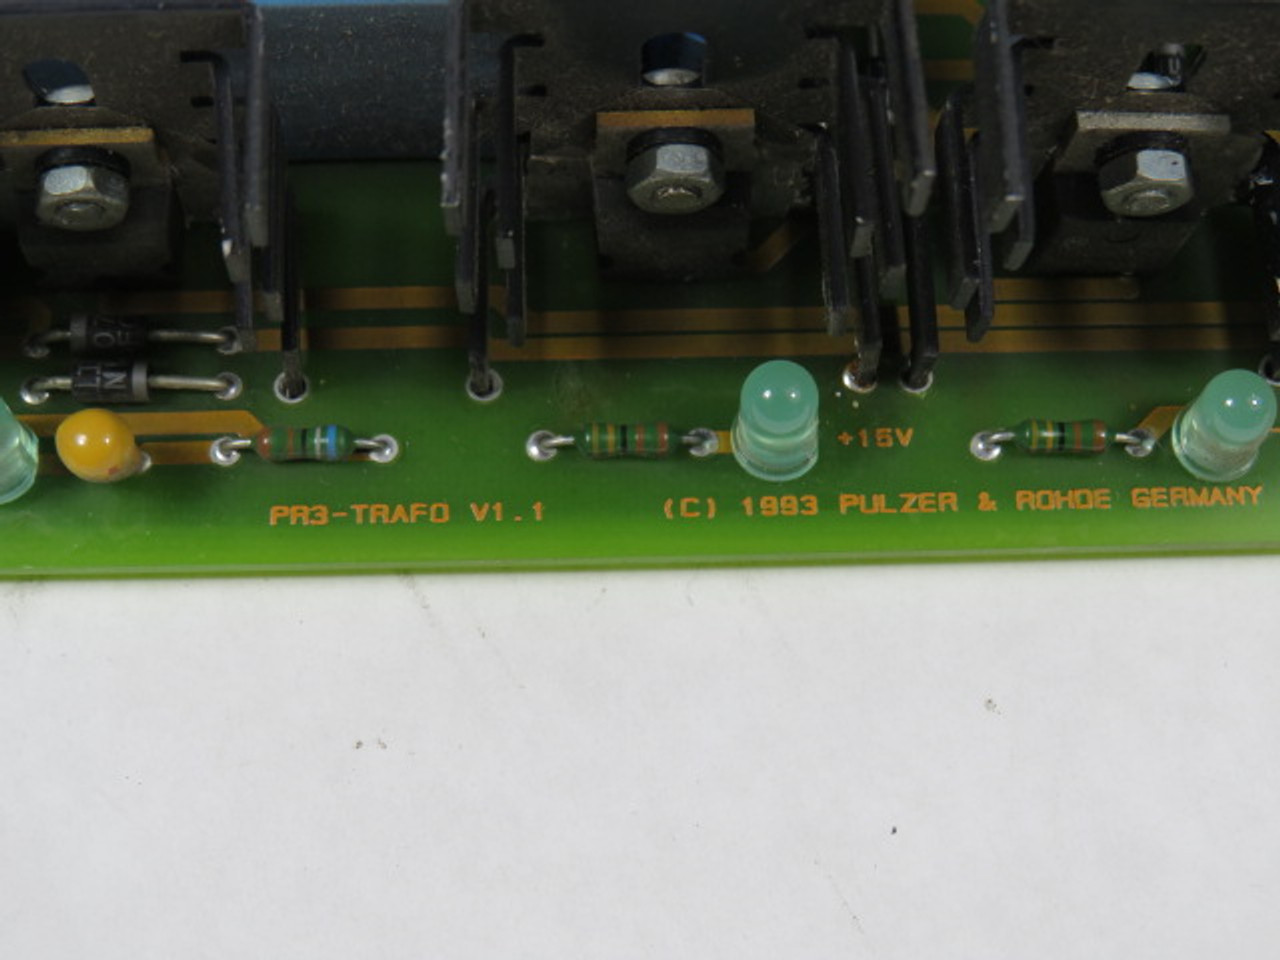 Pulzer & Rohde PR3-TRAFO Transformer Control Board USED